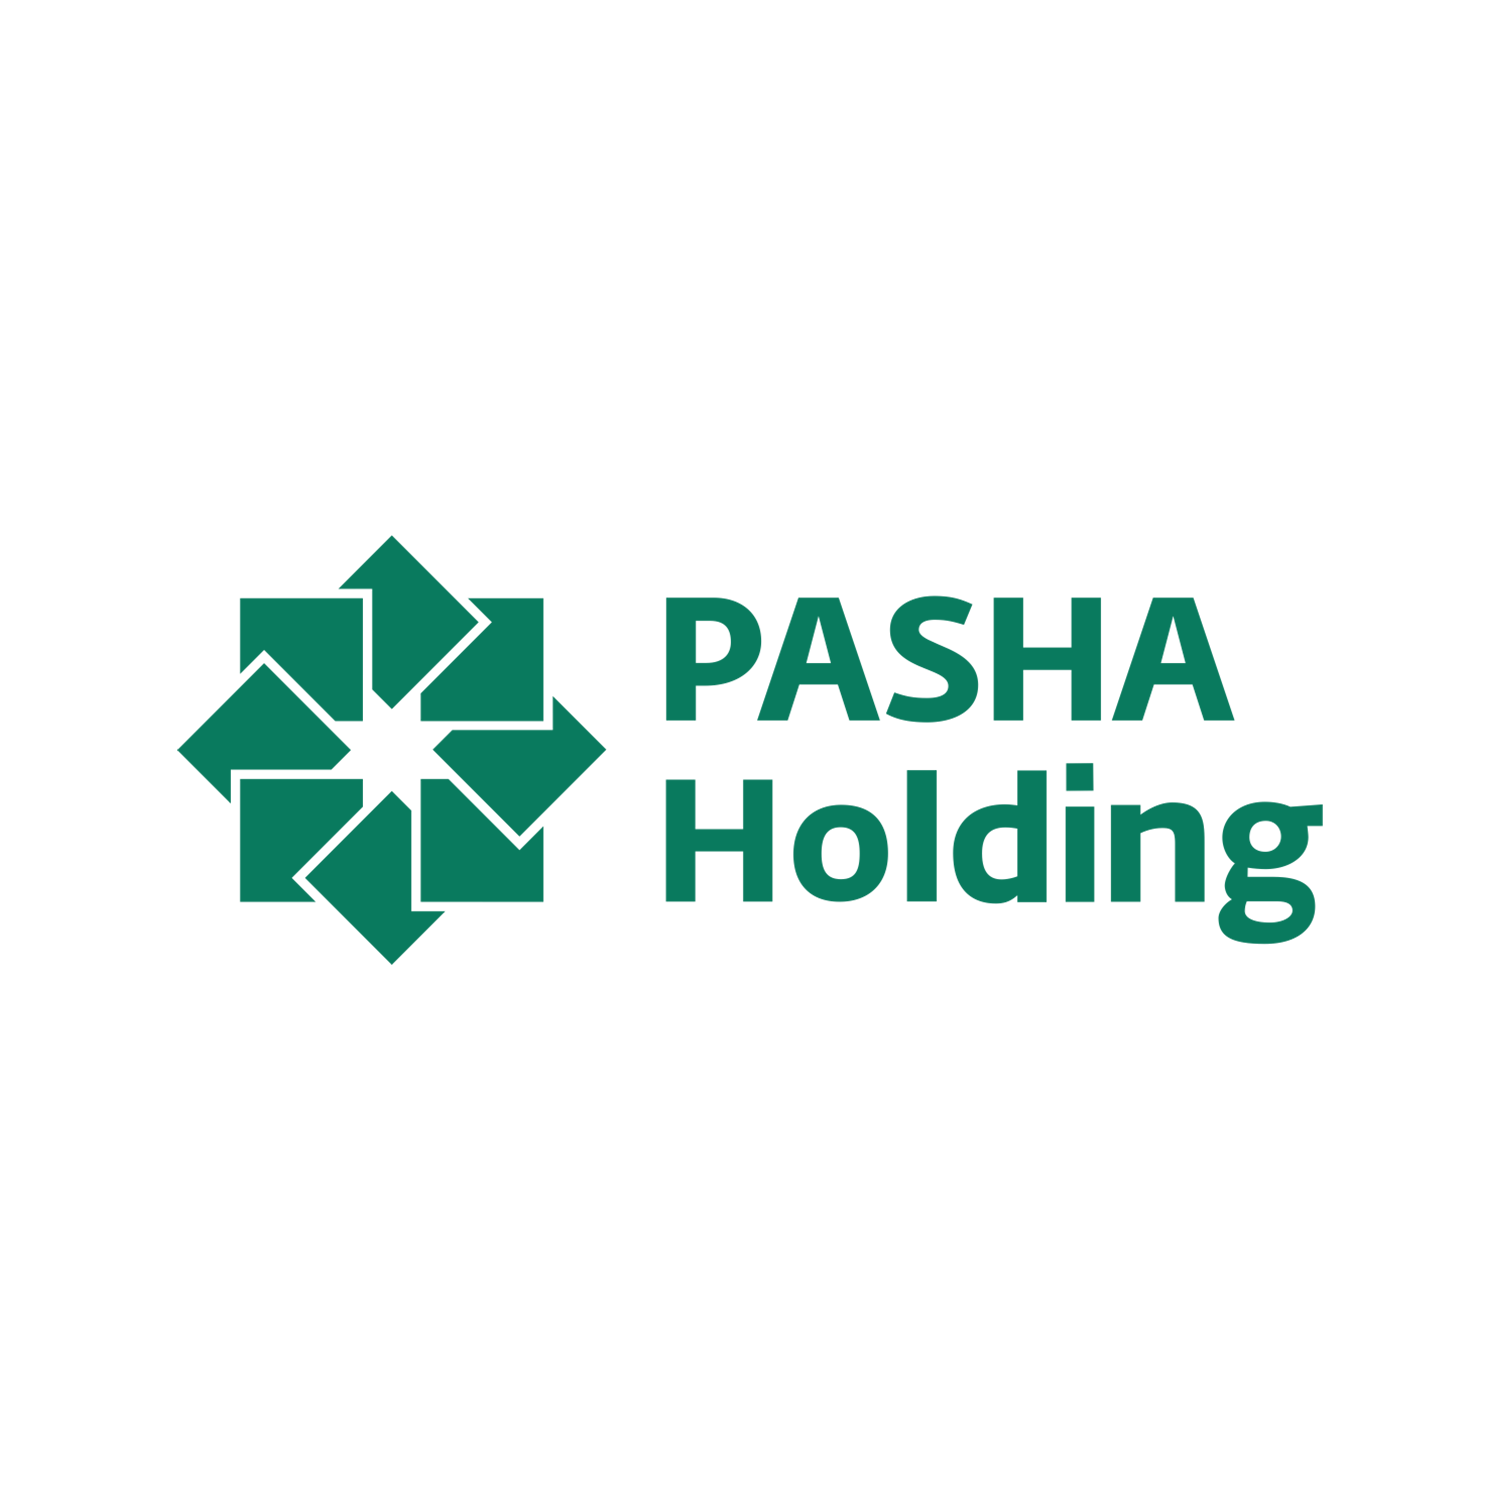 Pasha Holding